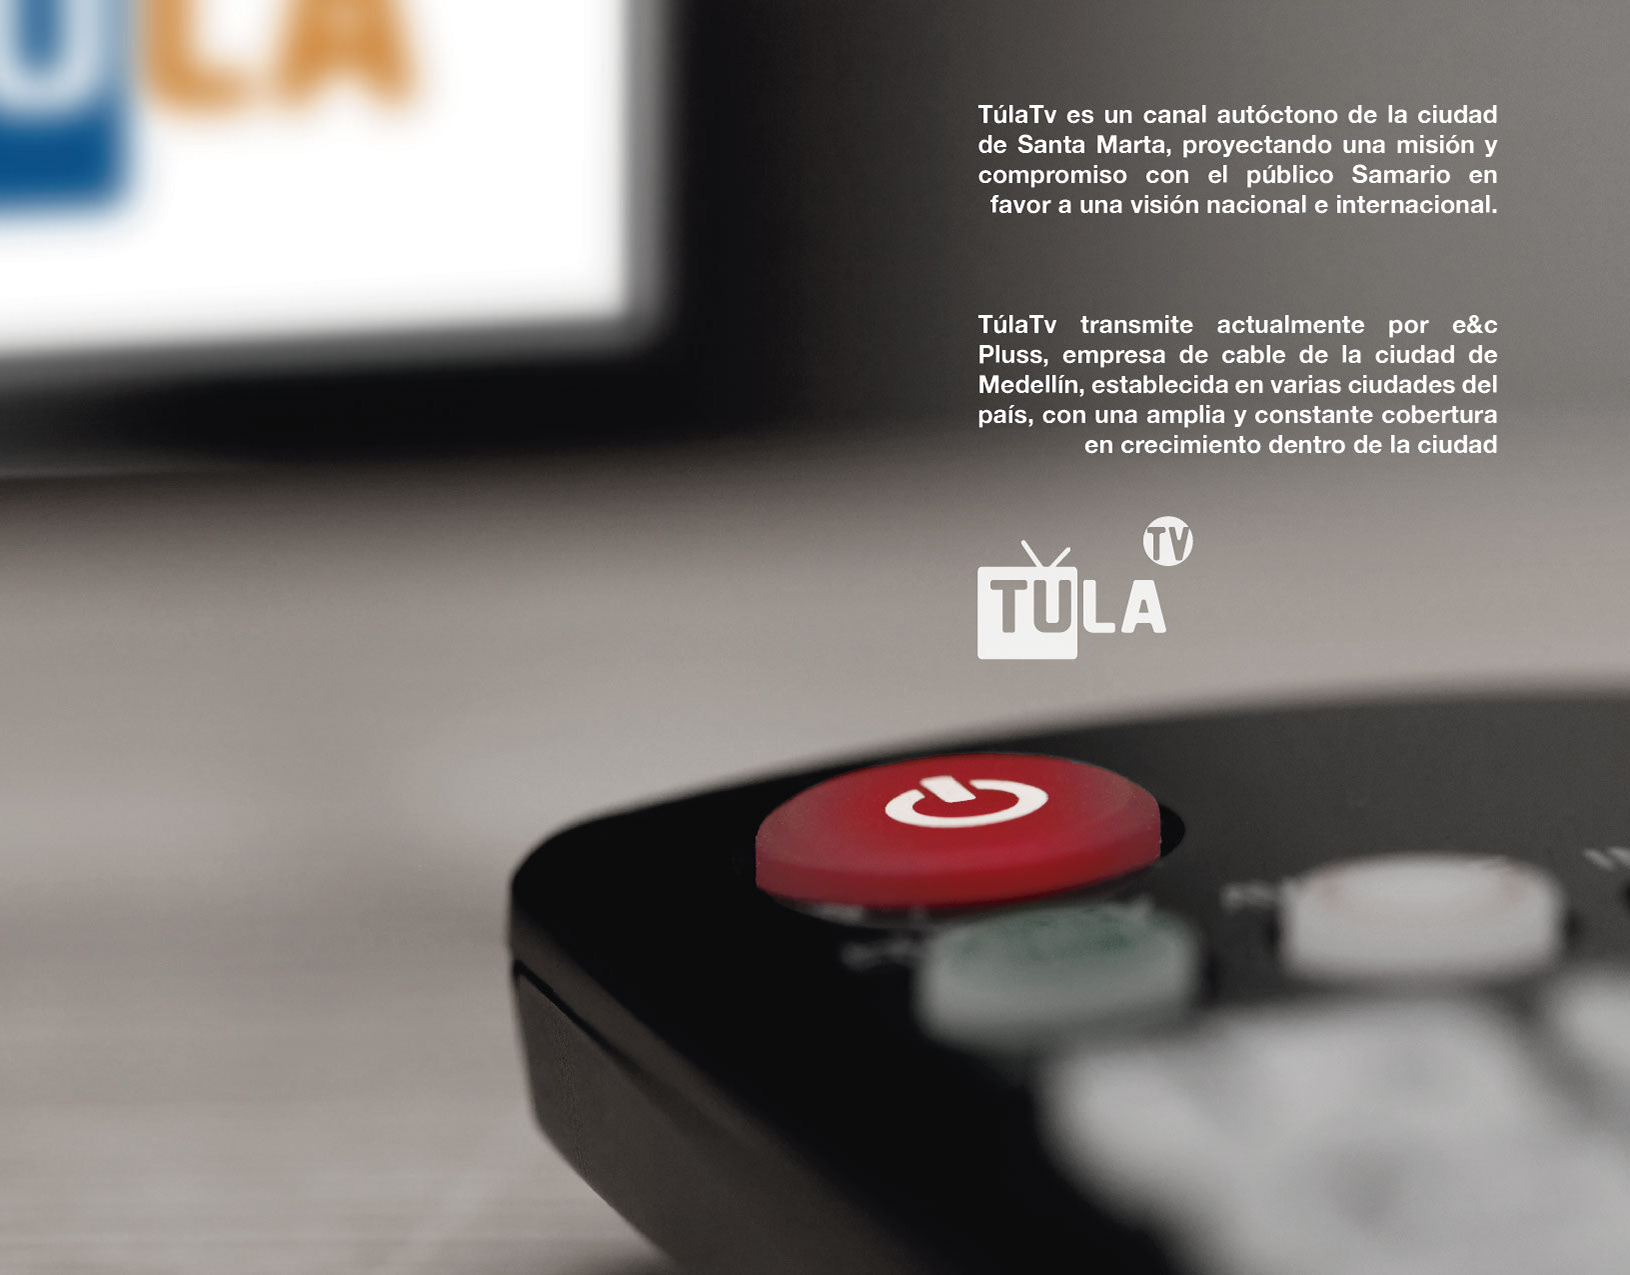 TulaTv es un canal aut

compromiso con el
favor a una vision naciona

TulaTv transmite actual
Pluss, empresa de cable
Medellin, establecida en variz
pais, con una amplia y